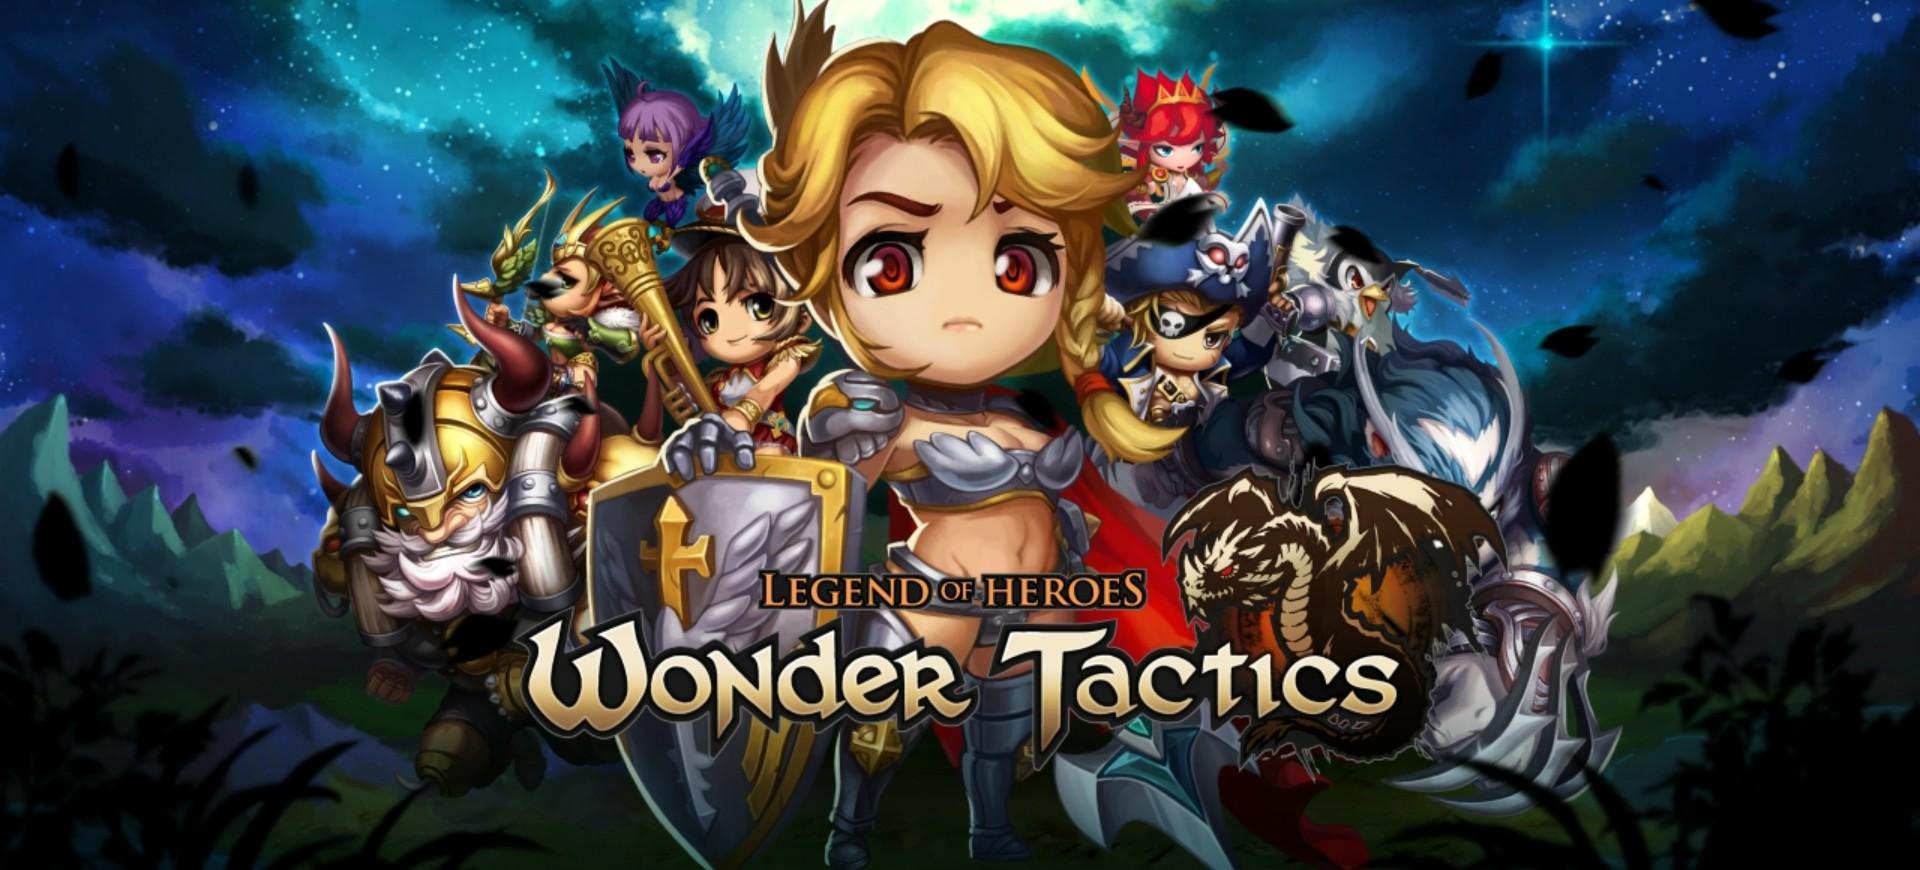 "Wonder Tactics" mở trang đăng kí nhận thưởng trước ngày ra mắt